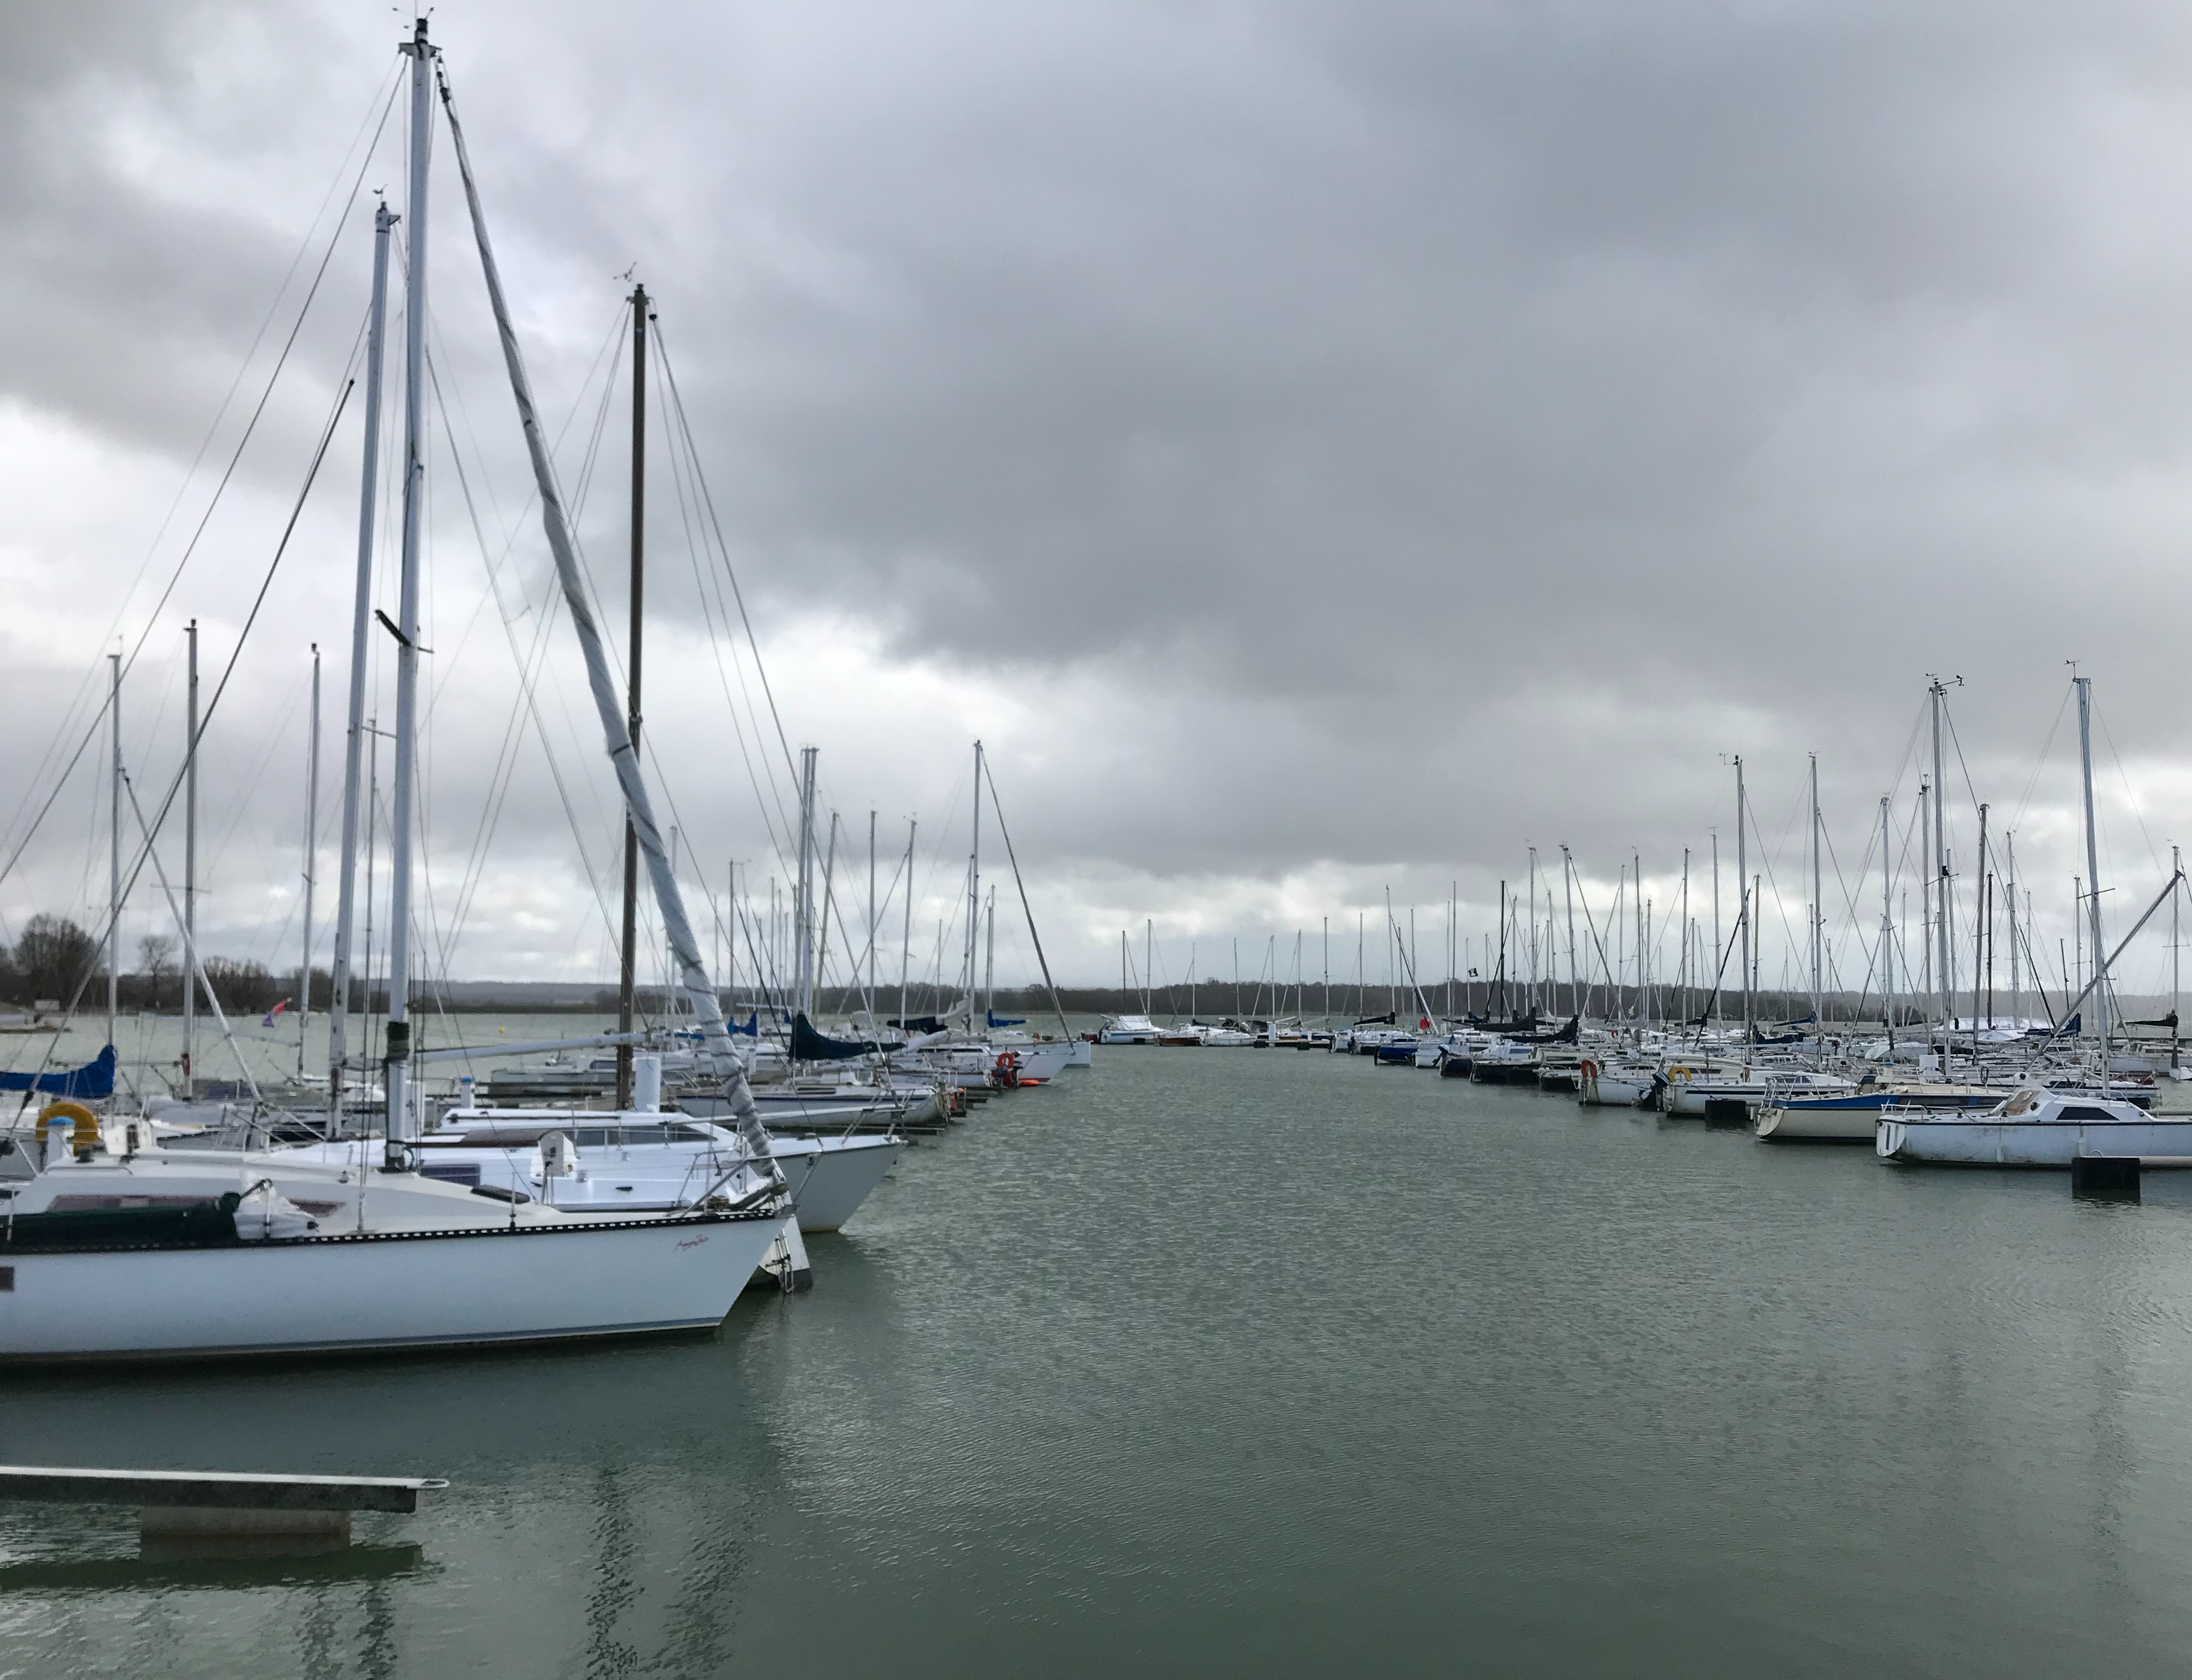 port de bateaux à voile avec ciel gris couvert